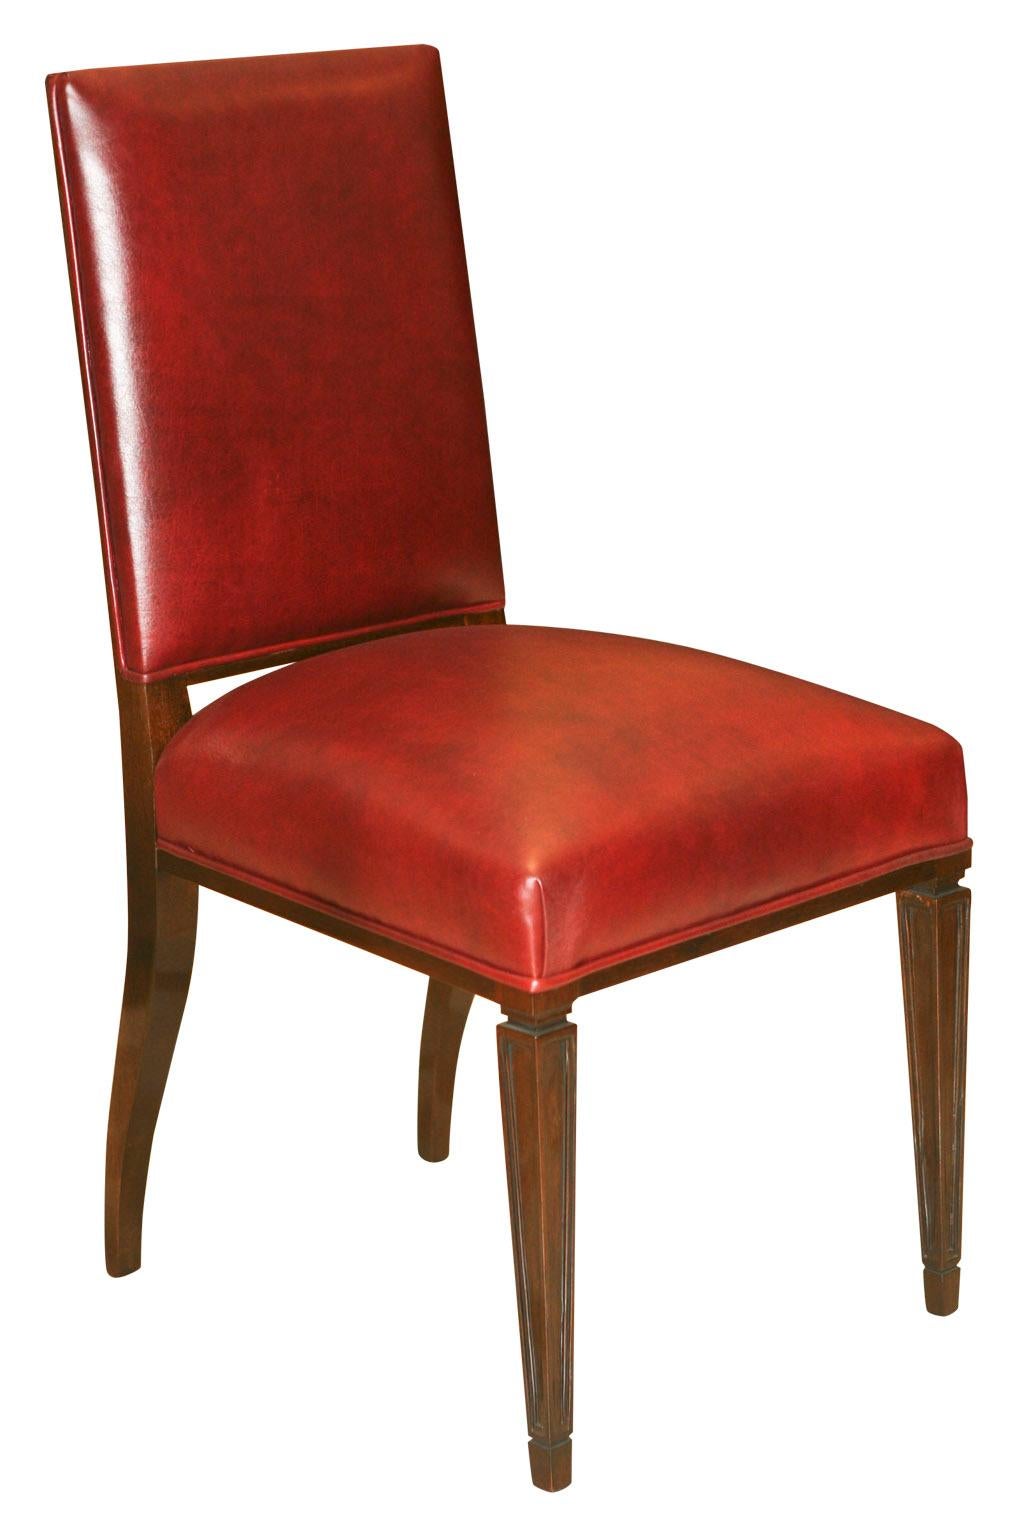 Luxe 12 chaises Art Déco en cuir et bois.

Année 1930
Pays : Français
MATERIAL : Bois et cuir
Finition : laque polyuréthane
12 chaises élégantes et sophistiquées.
Vous voulez vivre dans l'âge d'or, ce sont les chaises dont votre projet a